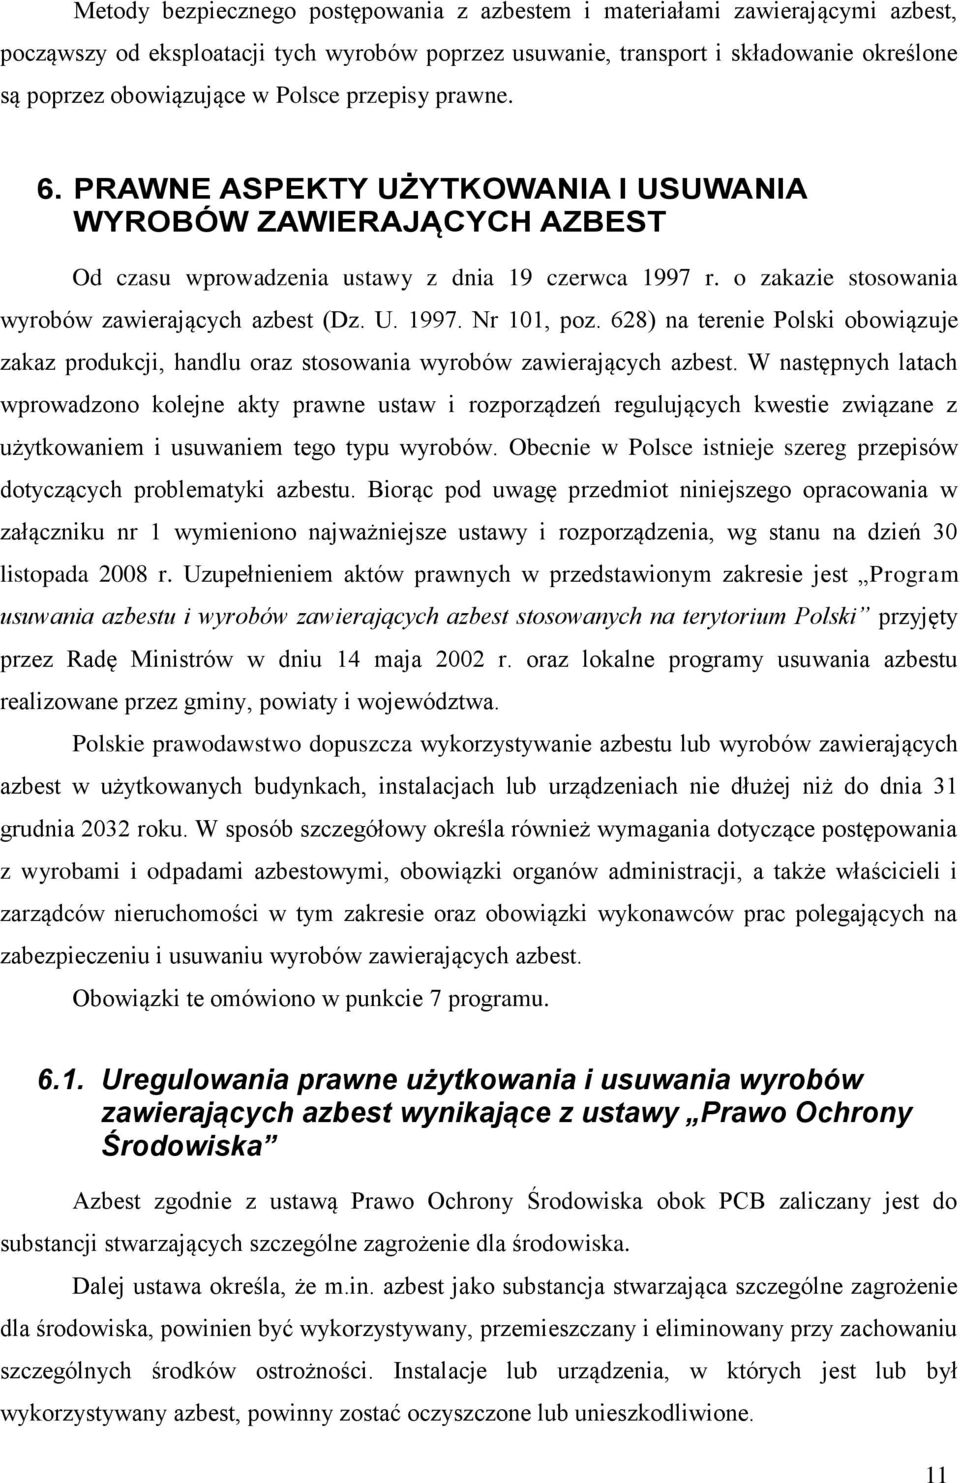 o zakazie stosowania wyrobów zawierających azbest (Dz. U. 1997. Nr 101, poz. 628) na terenie Polski obowiązuje zakaz produkcji, handlu oraz stosowania wyrobów zawierających azbest.